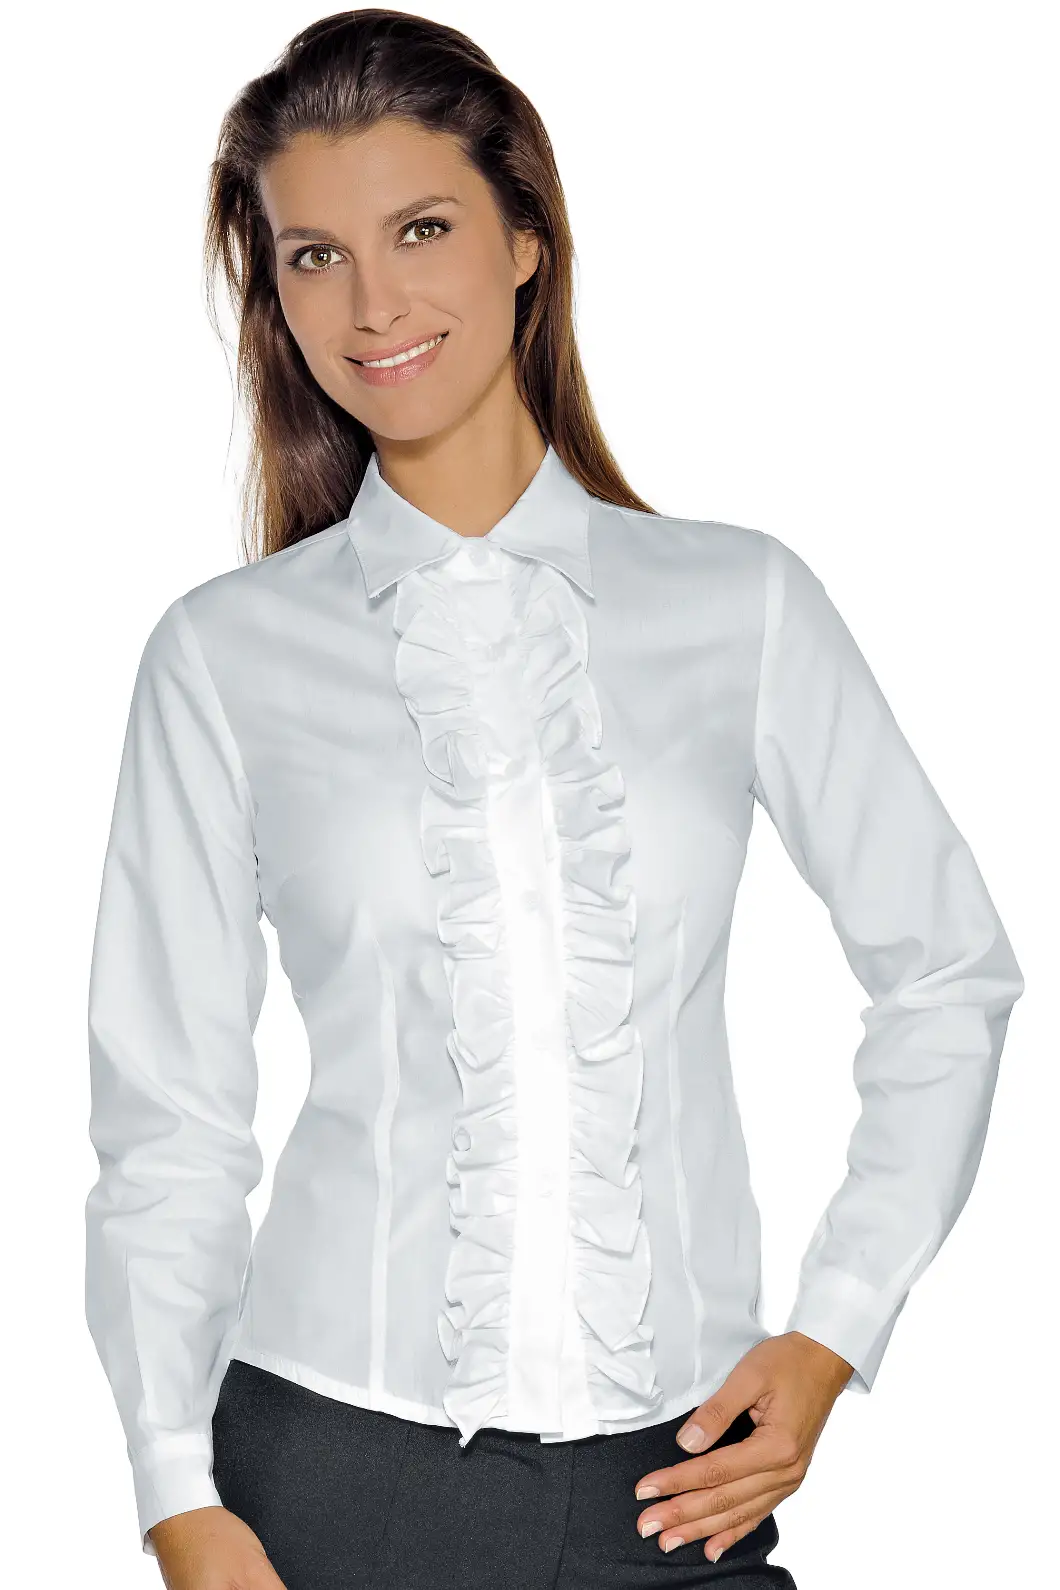 Camicia Bianca Rouches da Promoter, Receptionist Personalizzata - Isacco